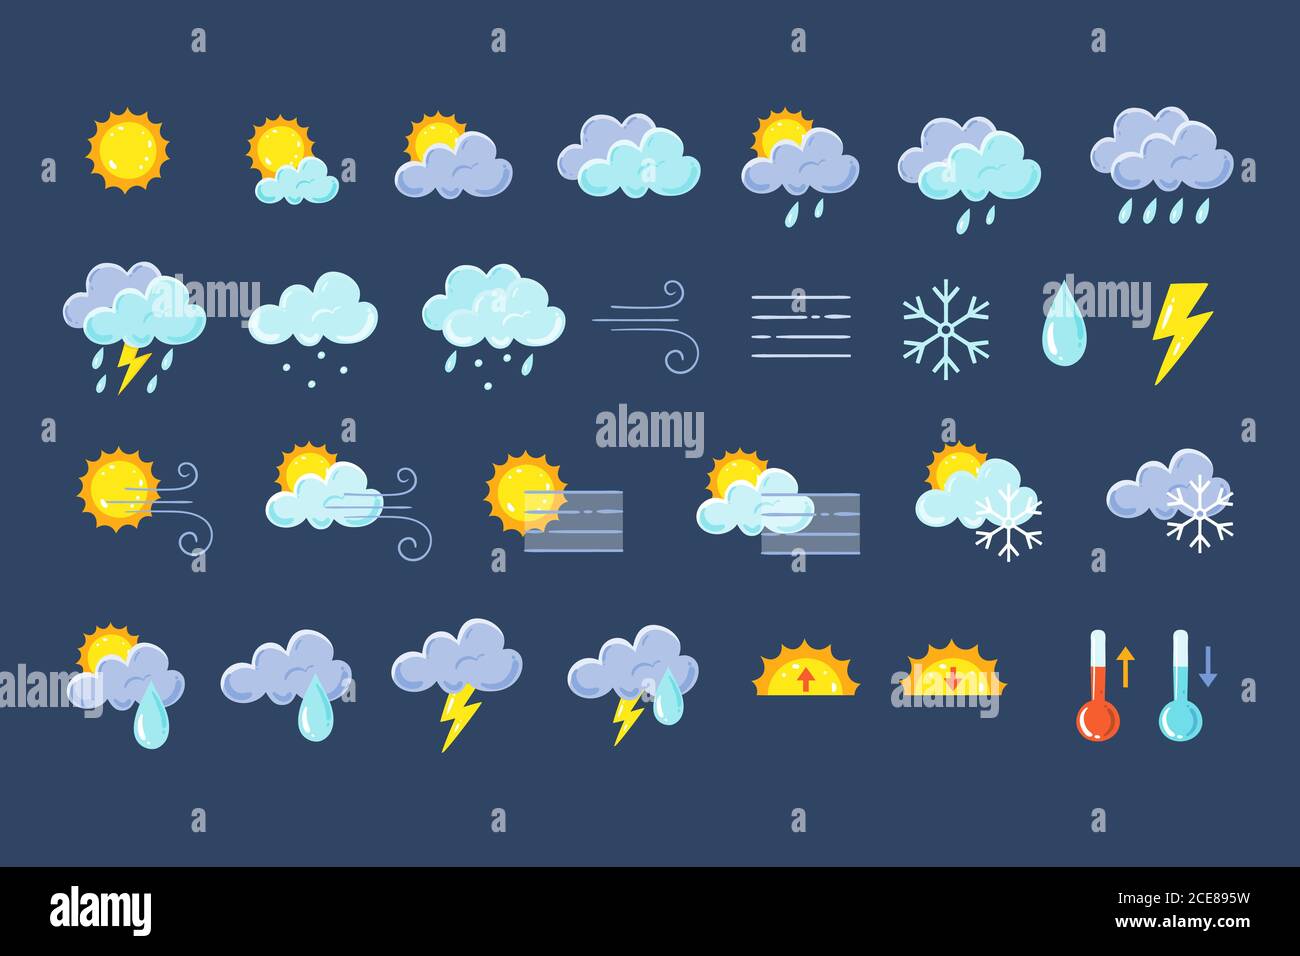 Wettersymbole. Farbenfrohe Design-Elemente für Wettervorhersagen, perfekt für mobile Apps und Widgets. Enthält Symbole der Sonne, Wolken, Schneeflocken... Stock Vektor